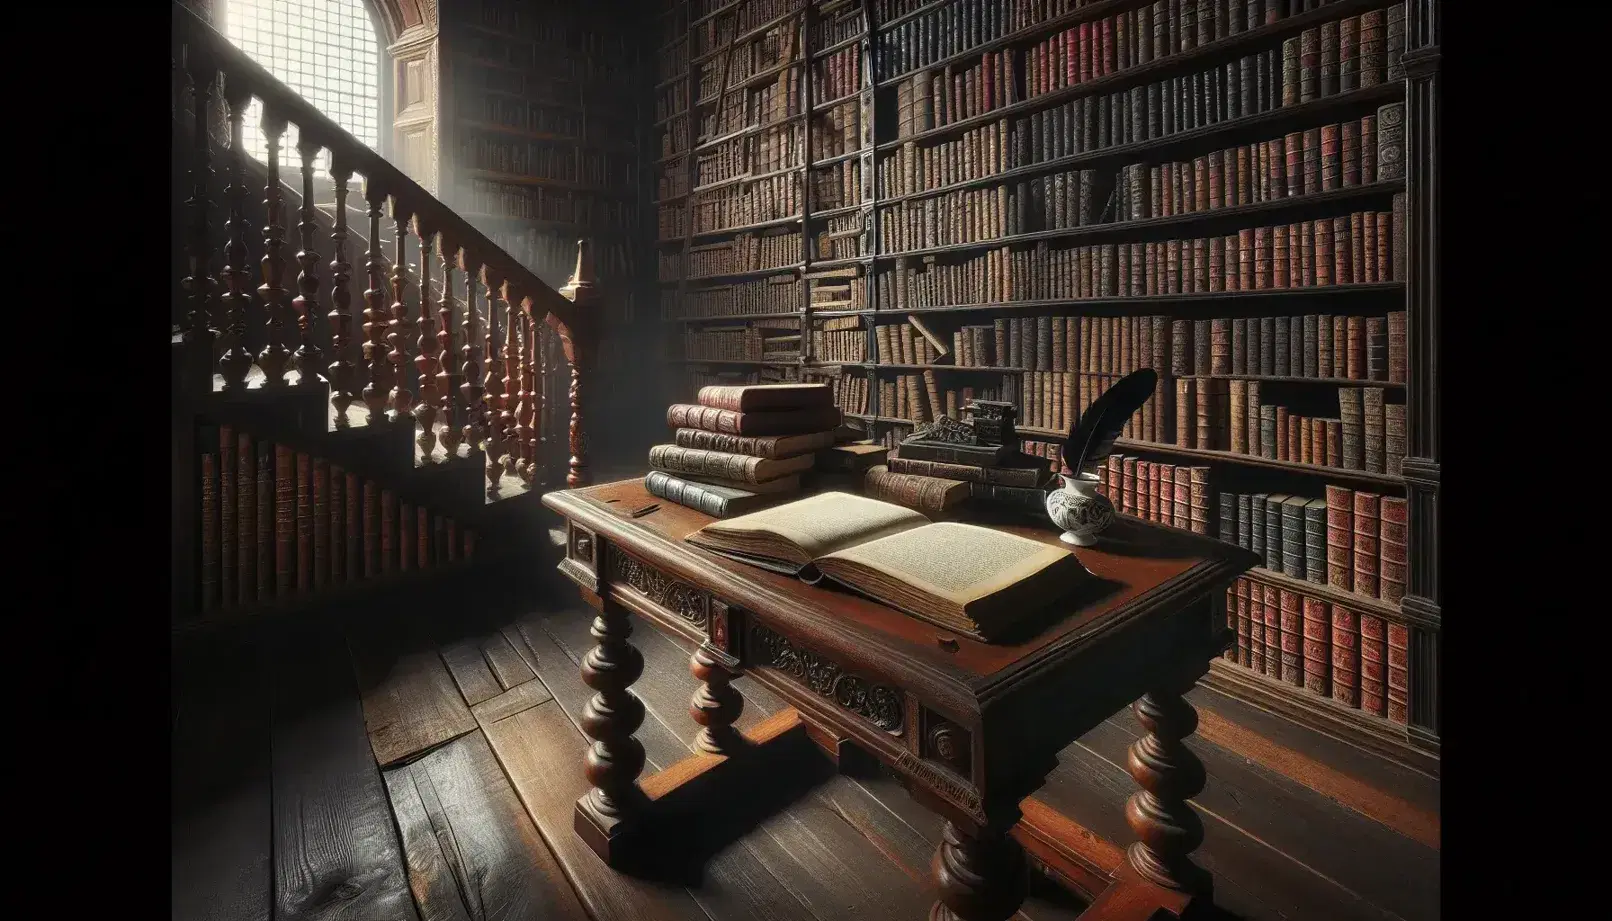 Biblioteca antigua con estantes de madera oscura llenos de libros variados, mesa con libro abierto, pluma y tintero, y escalera al fondo bajo luz suave.